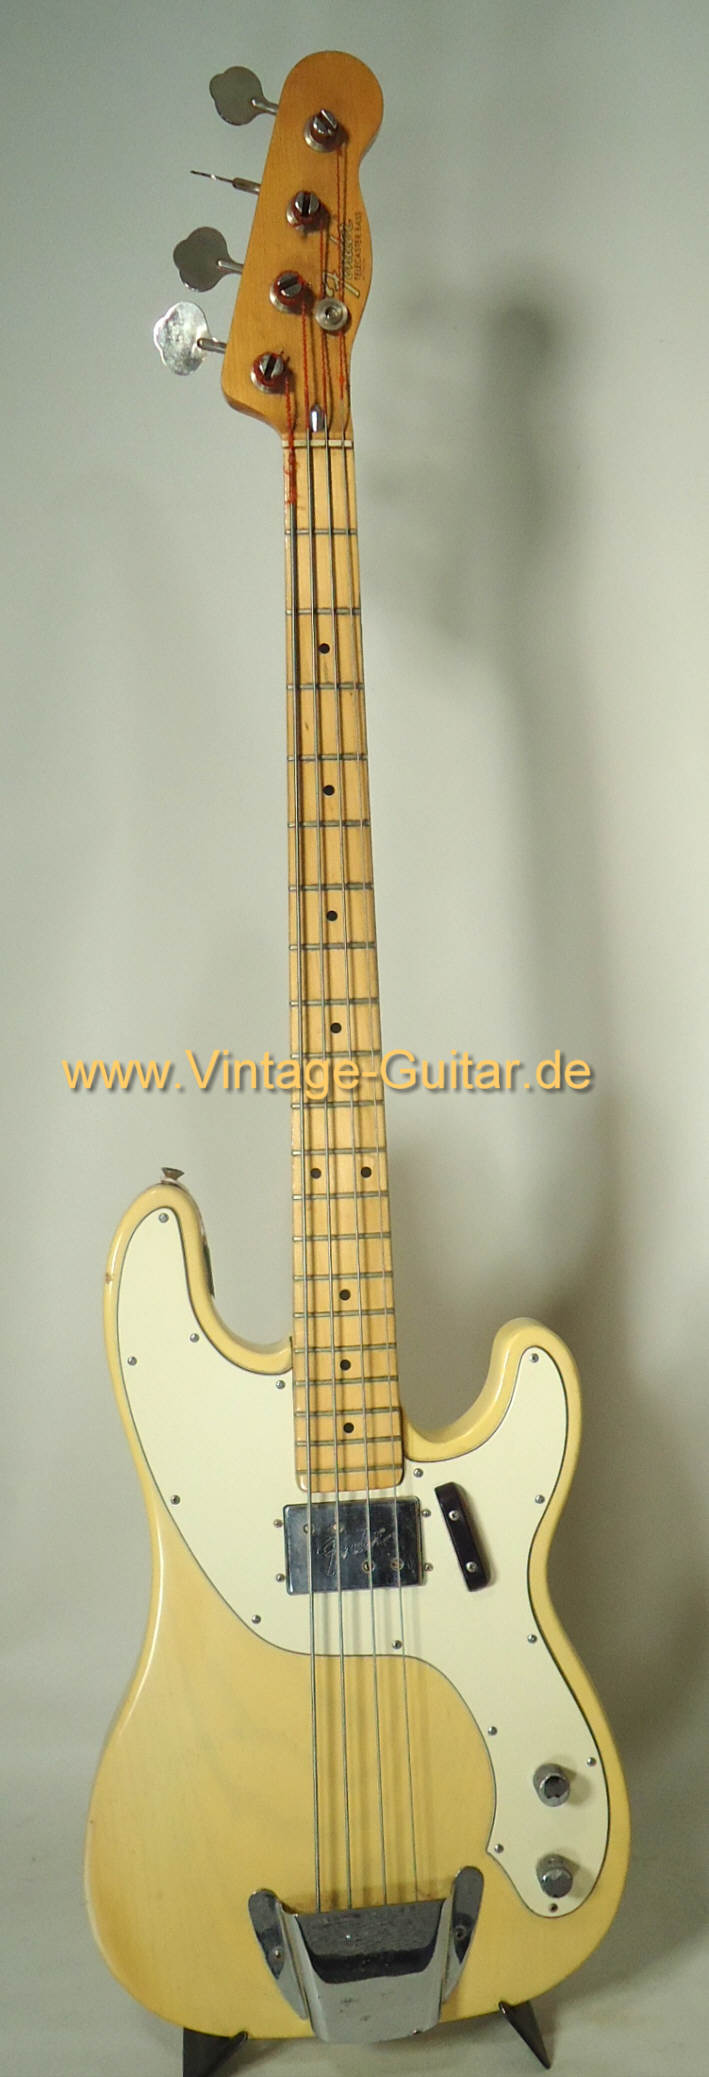 Fender-Telecaster-Bass-1972-a.jpg